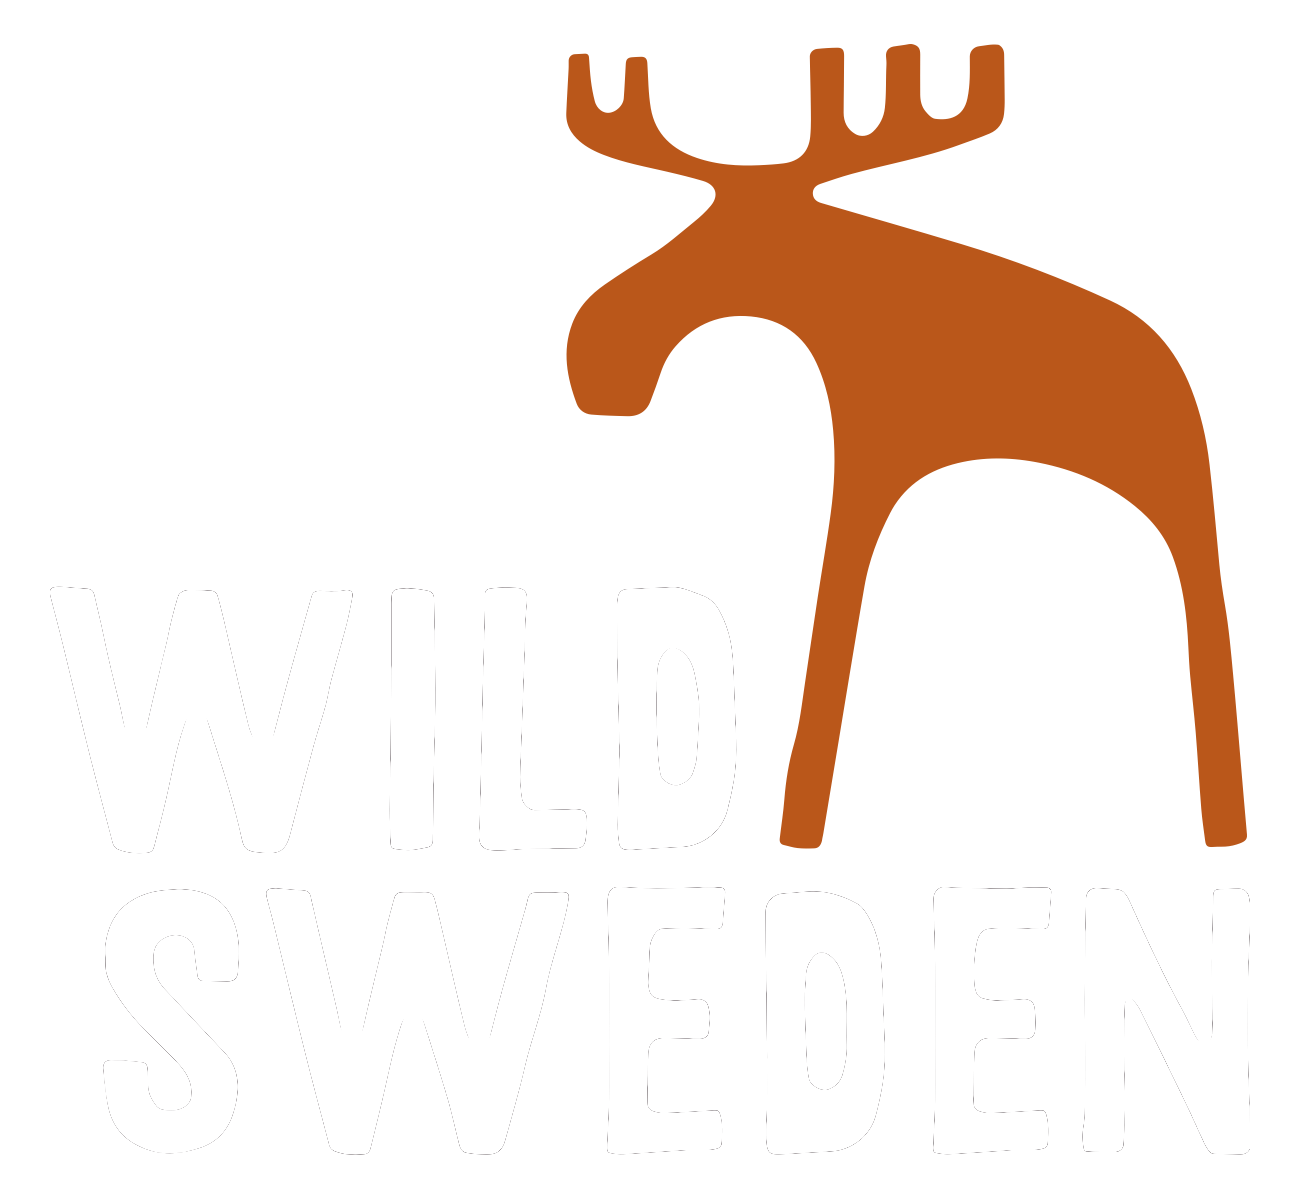 WildSweden - wildlife adventures in Sweden